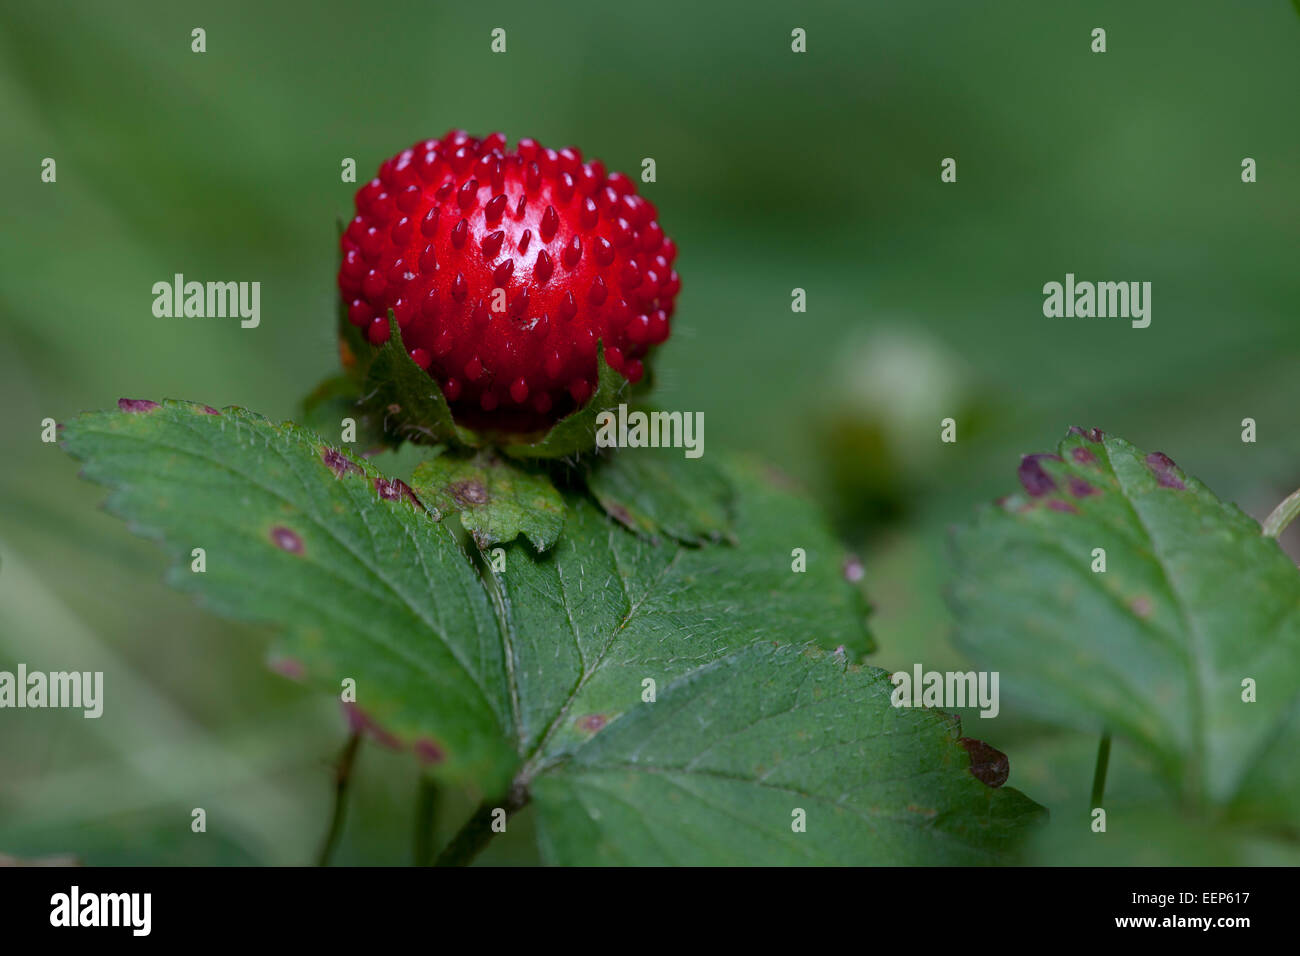 Wald-Erdbeere / Fragaria vesca / Alpine strawberry [Fragaria vesca] Stock Photo